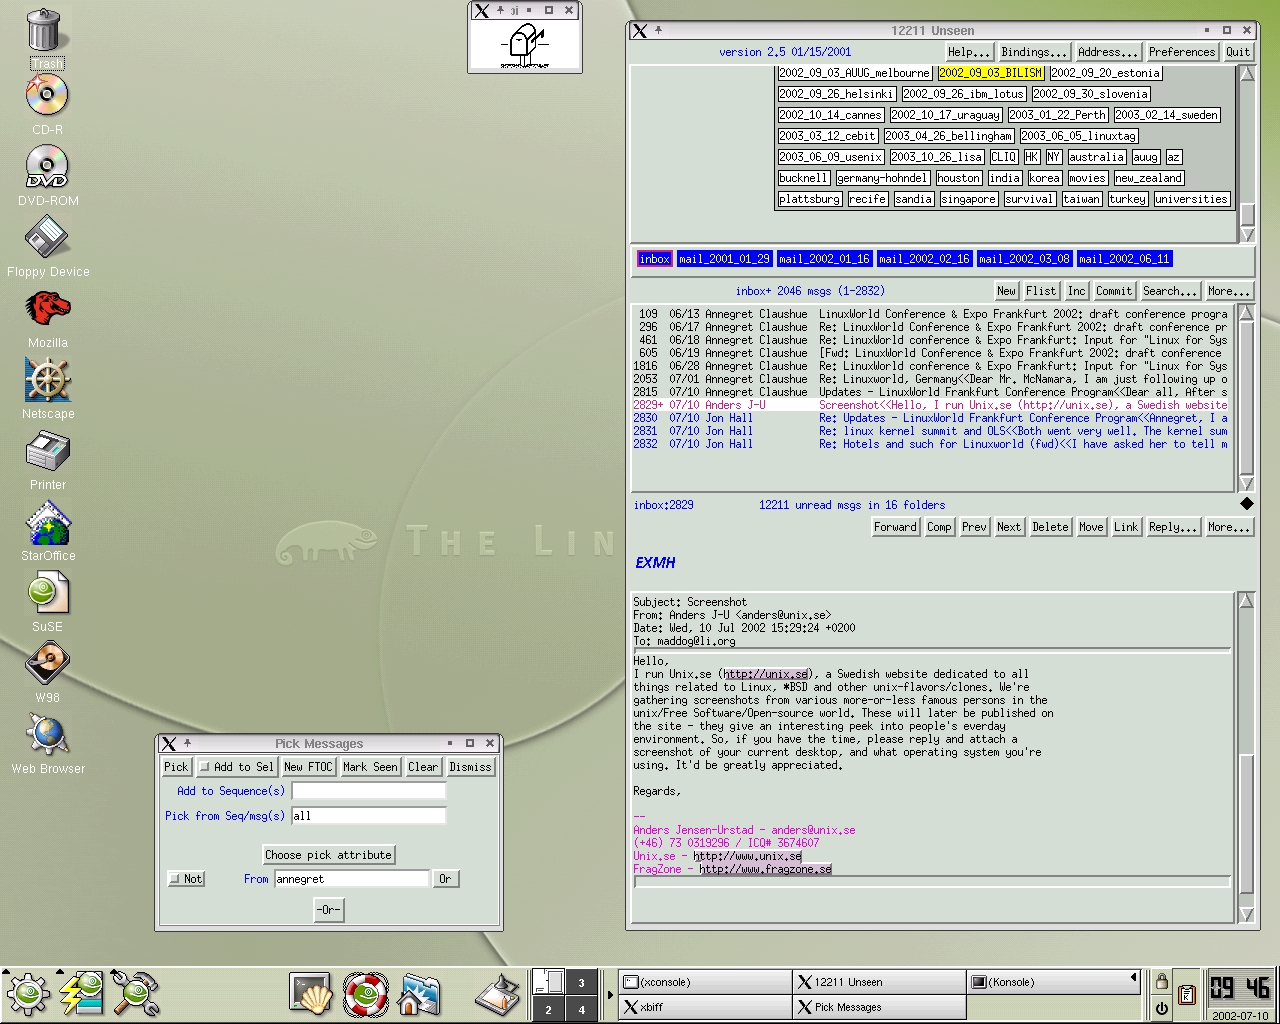 Jon Hall的台式电脑桌面，截图于2002年7月